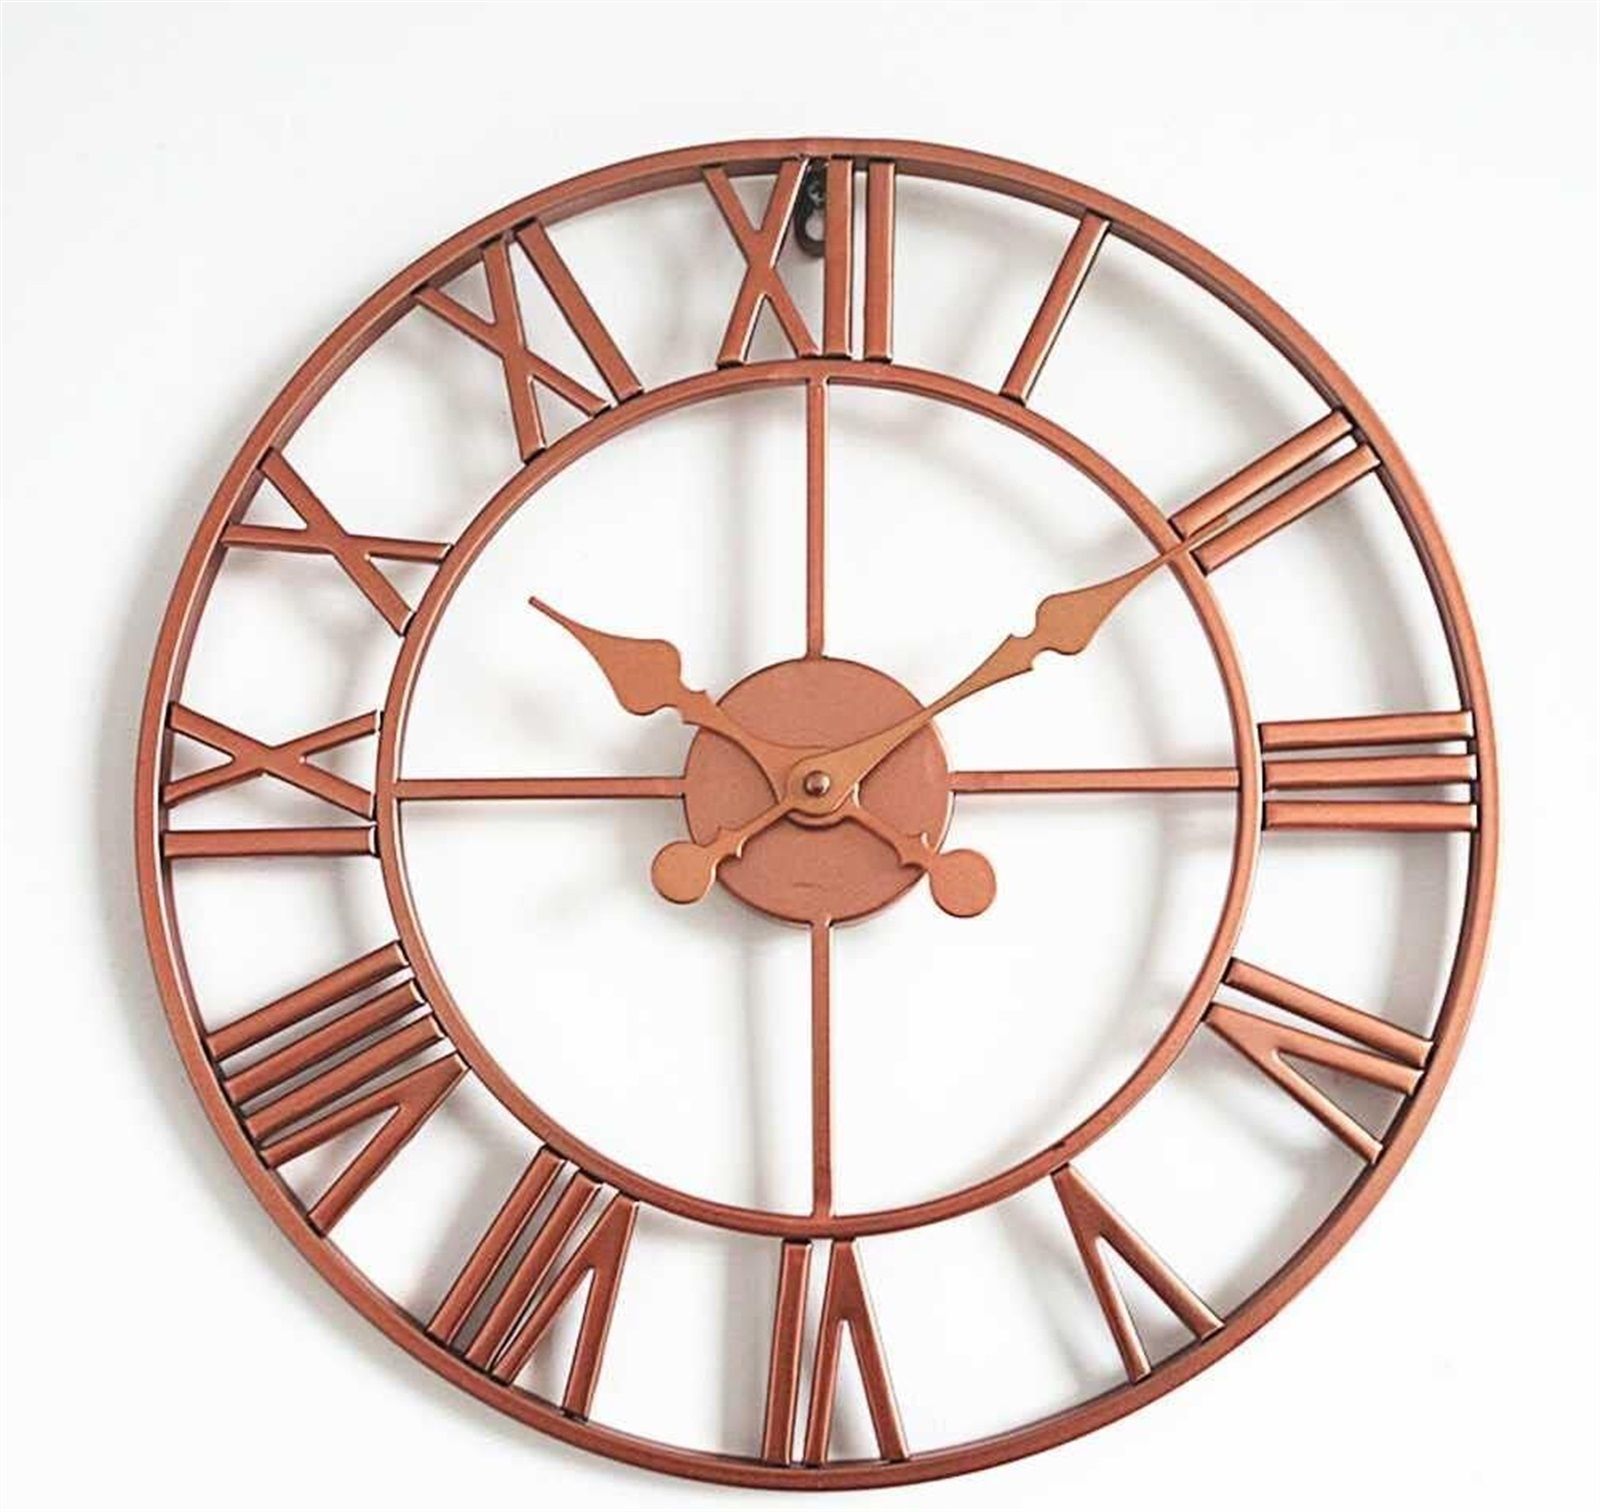 Круглые металлические часы. Римские часы дизайнерские. Часы Quartz декоративные. Стеклянные часы круглые настенные Антиквар. Часы 16:40.